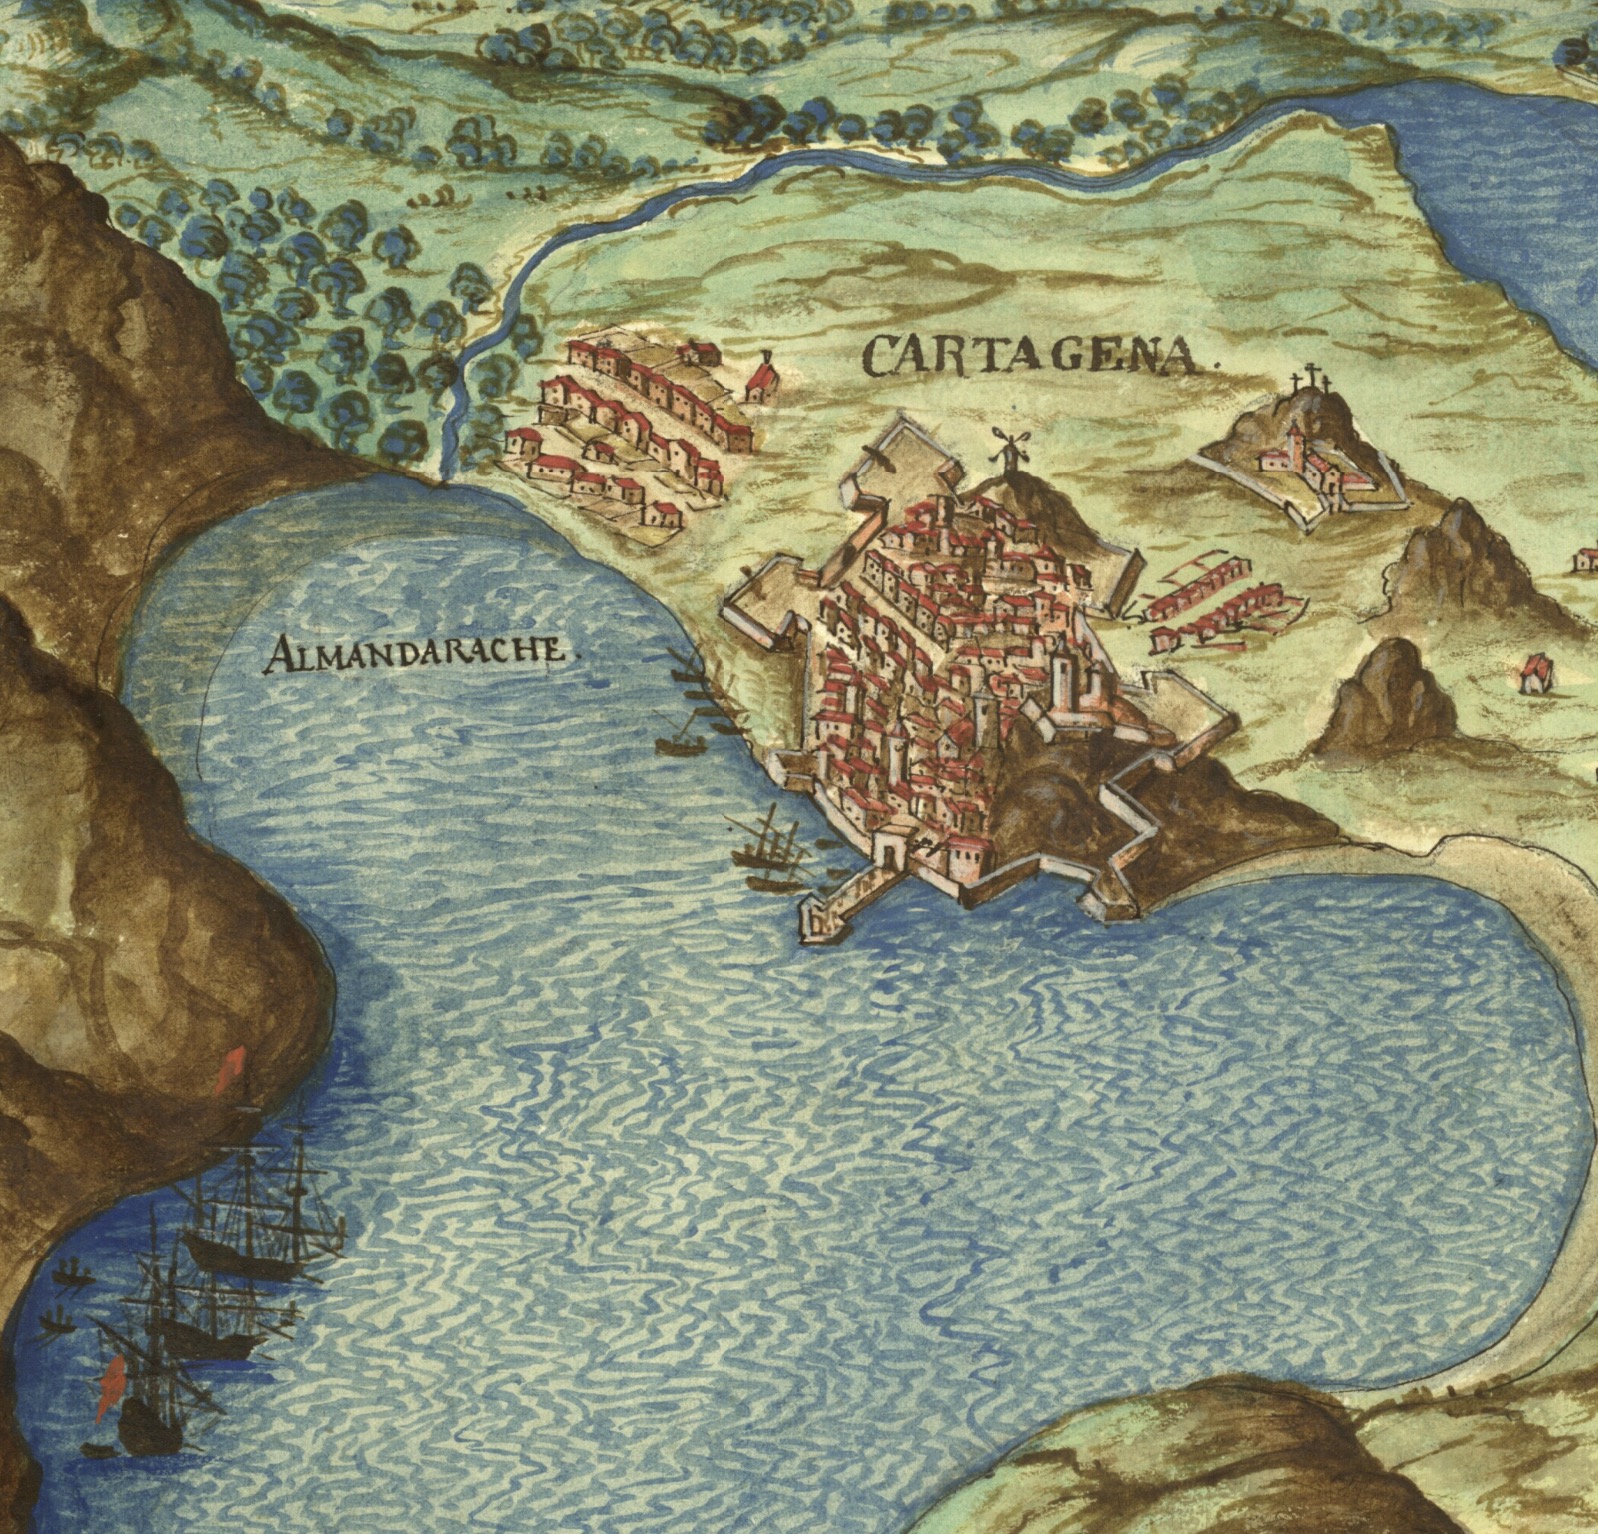 Puerto de Cartagena. <em>La descripción de España y de las costas y puertos de sus reinos</em>, fol. 71r. Pedro Teixeira (1634)